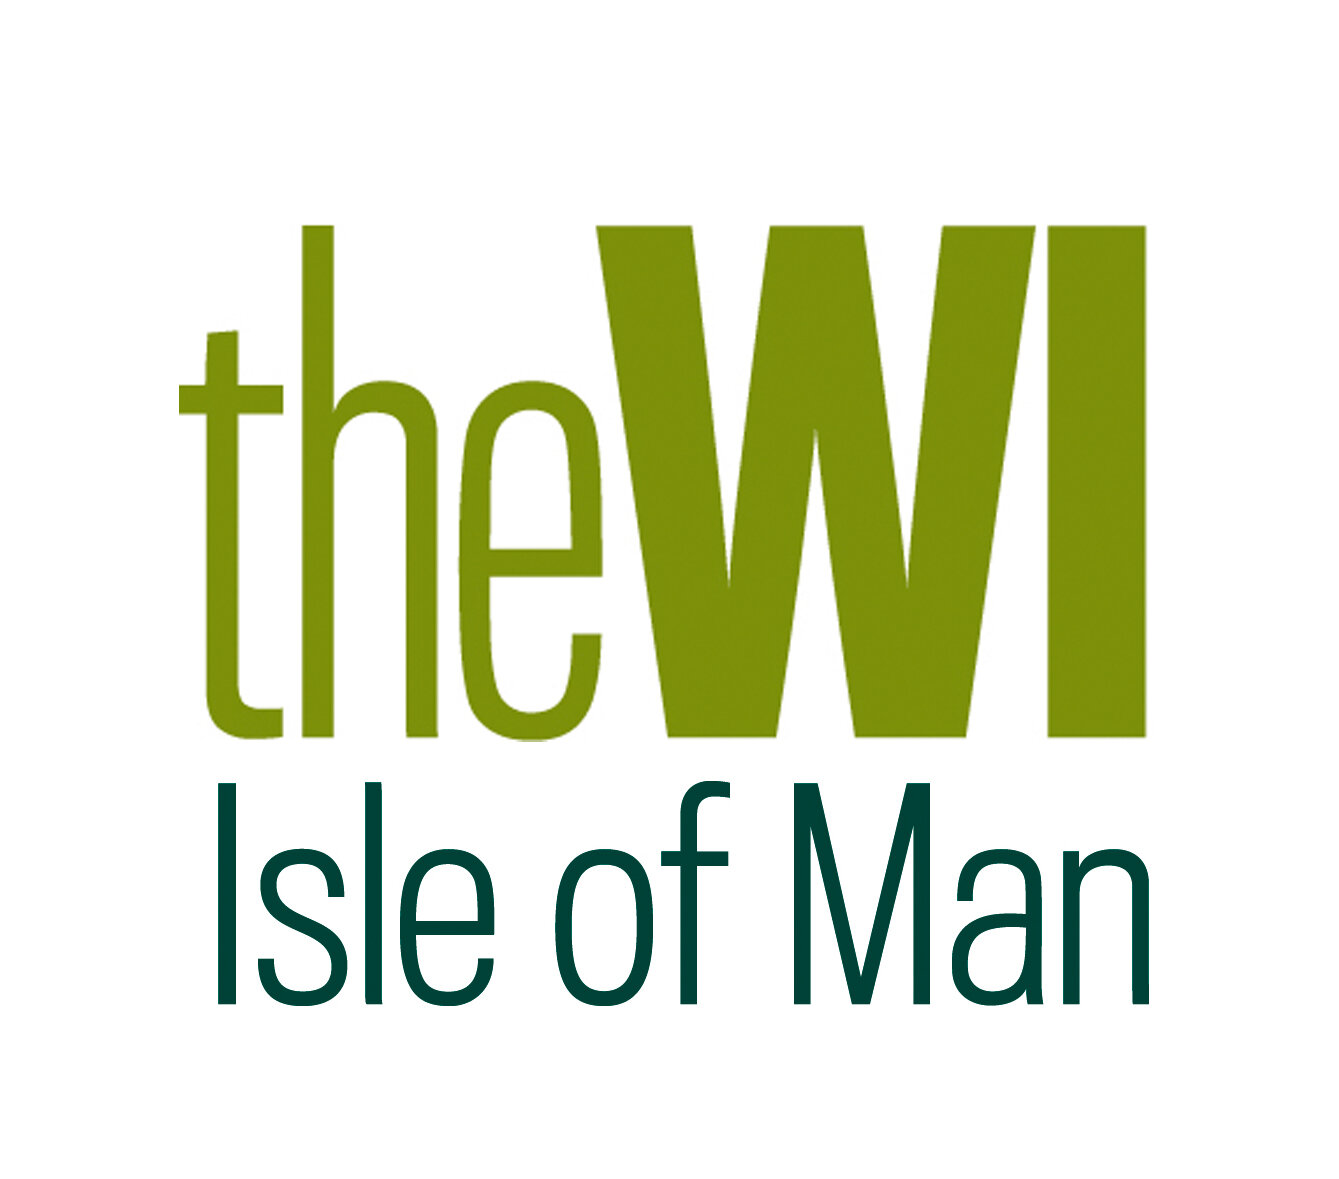 iQ Isle of Man